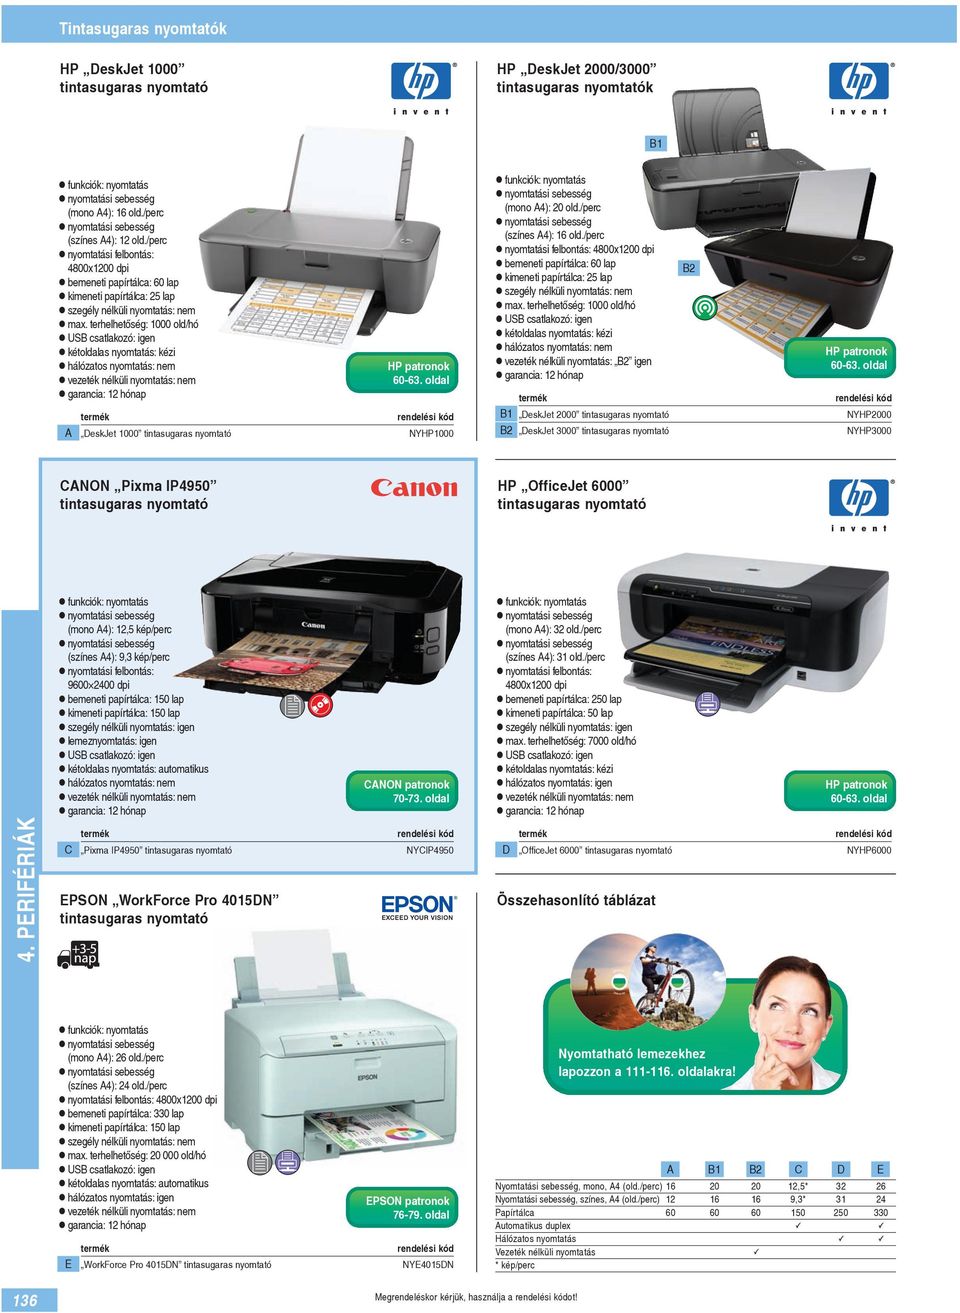 terhelhetőség: 1000 old/hó hálózatos nyomtatás: nem A DeskJet 1000 tintasugaras nyomtató HP patronok 60-63. oldal NYHP1000 (mono A4): 20 old./perc (színes A4): 16 old.